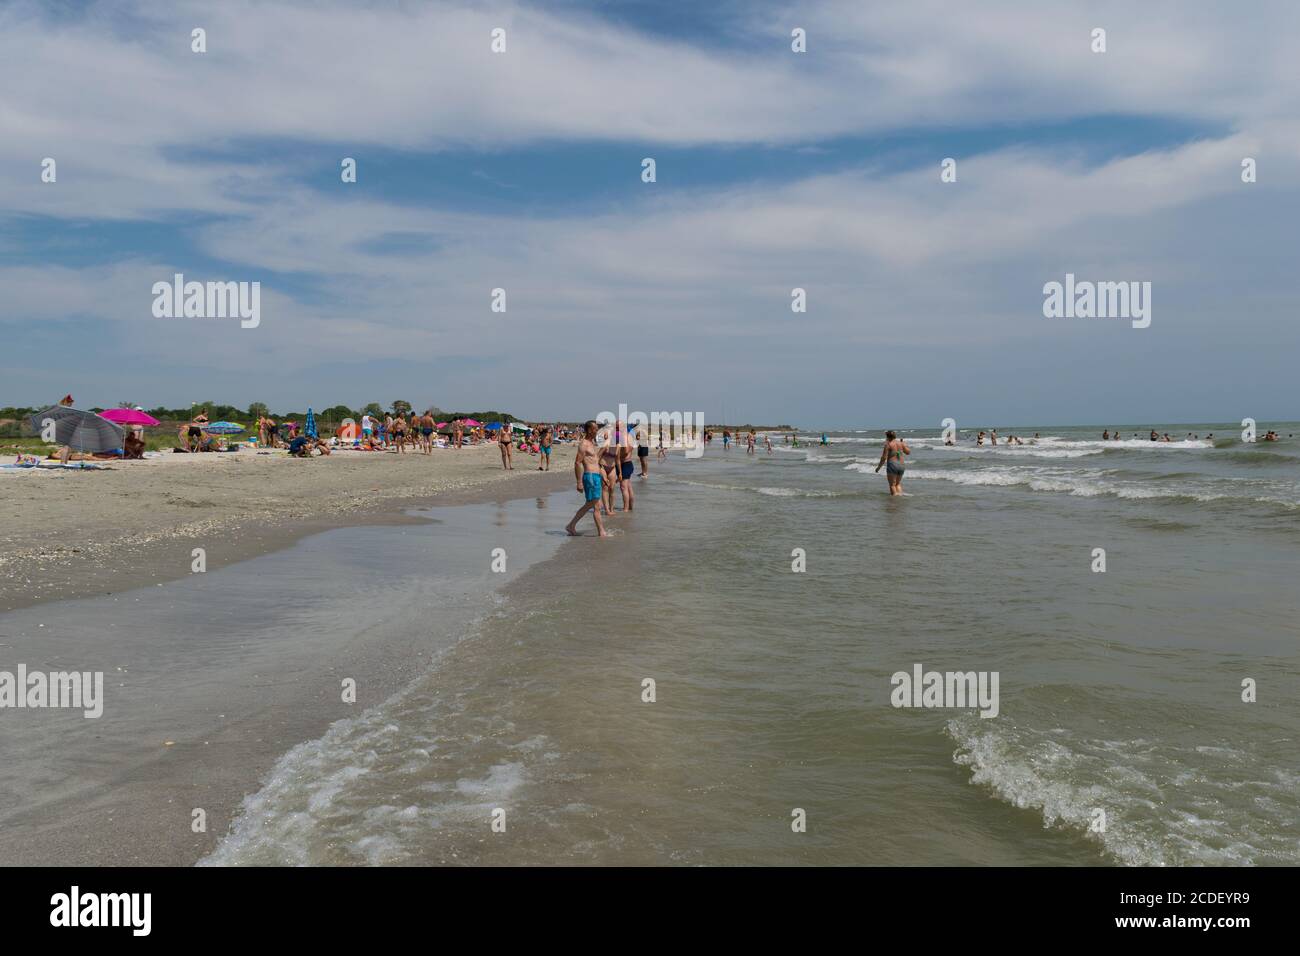 Corbu, Constanta, Romania - 14 agosto 2019: Le persone godono di una rilassante giornata estiva sull'ultima spiaggia virging a Corbu, Romania. Foto Stock